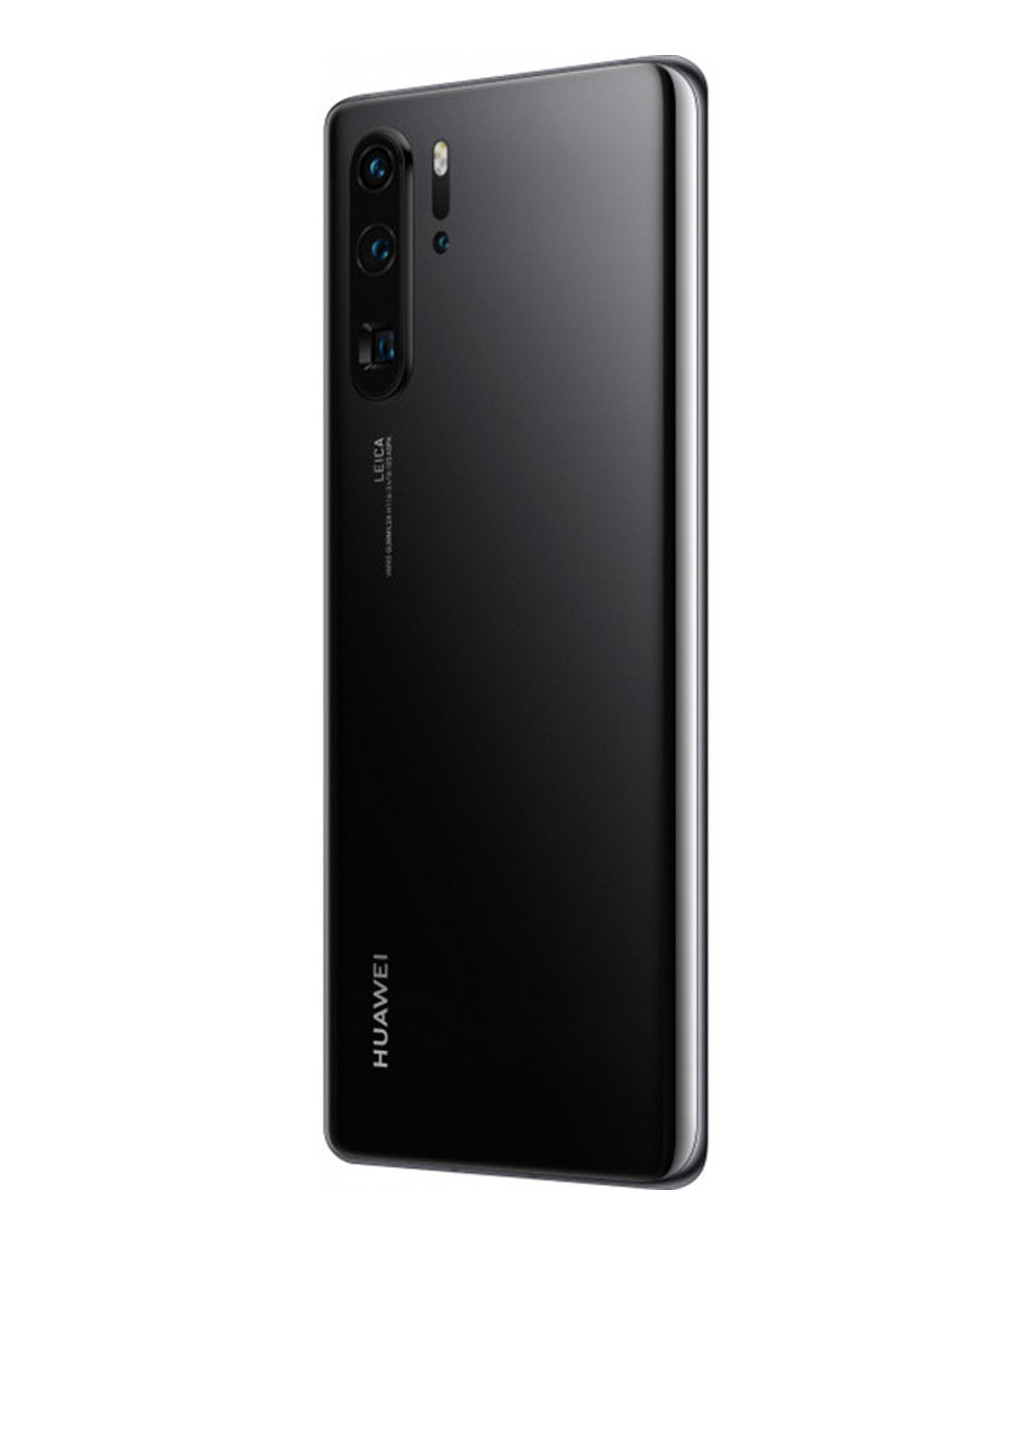 Смартфон Huawei p30 pro 6/128 black (vog-l29b) (130284875)